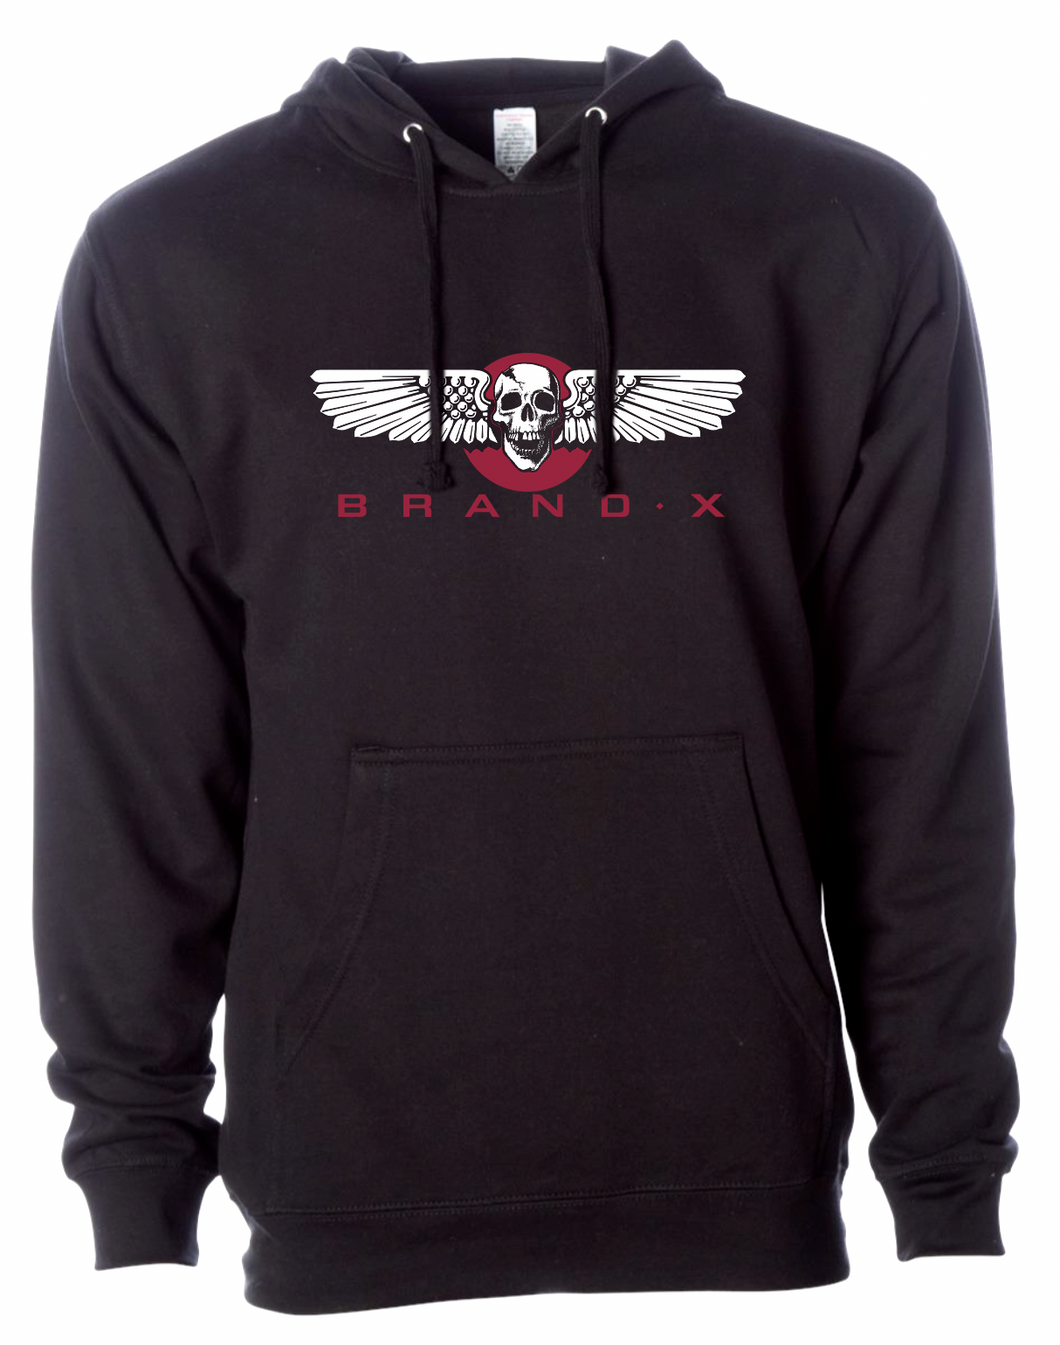 Brand-X Wings Hoodie